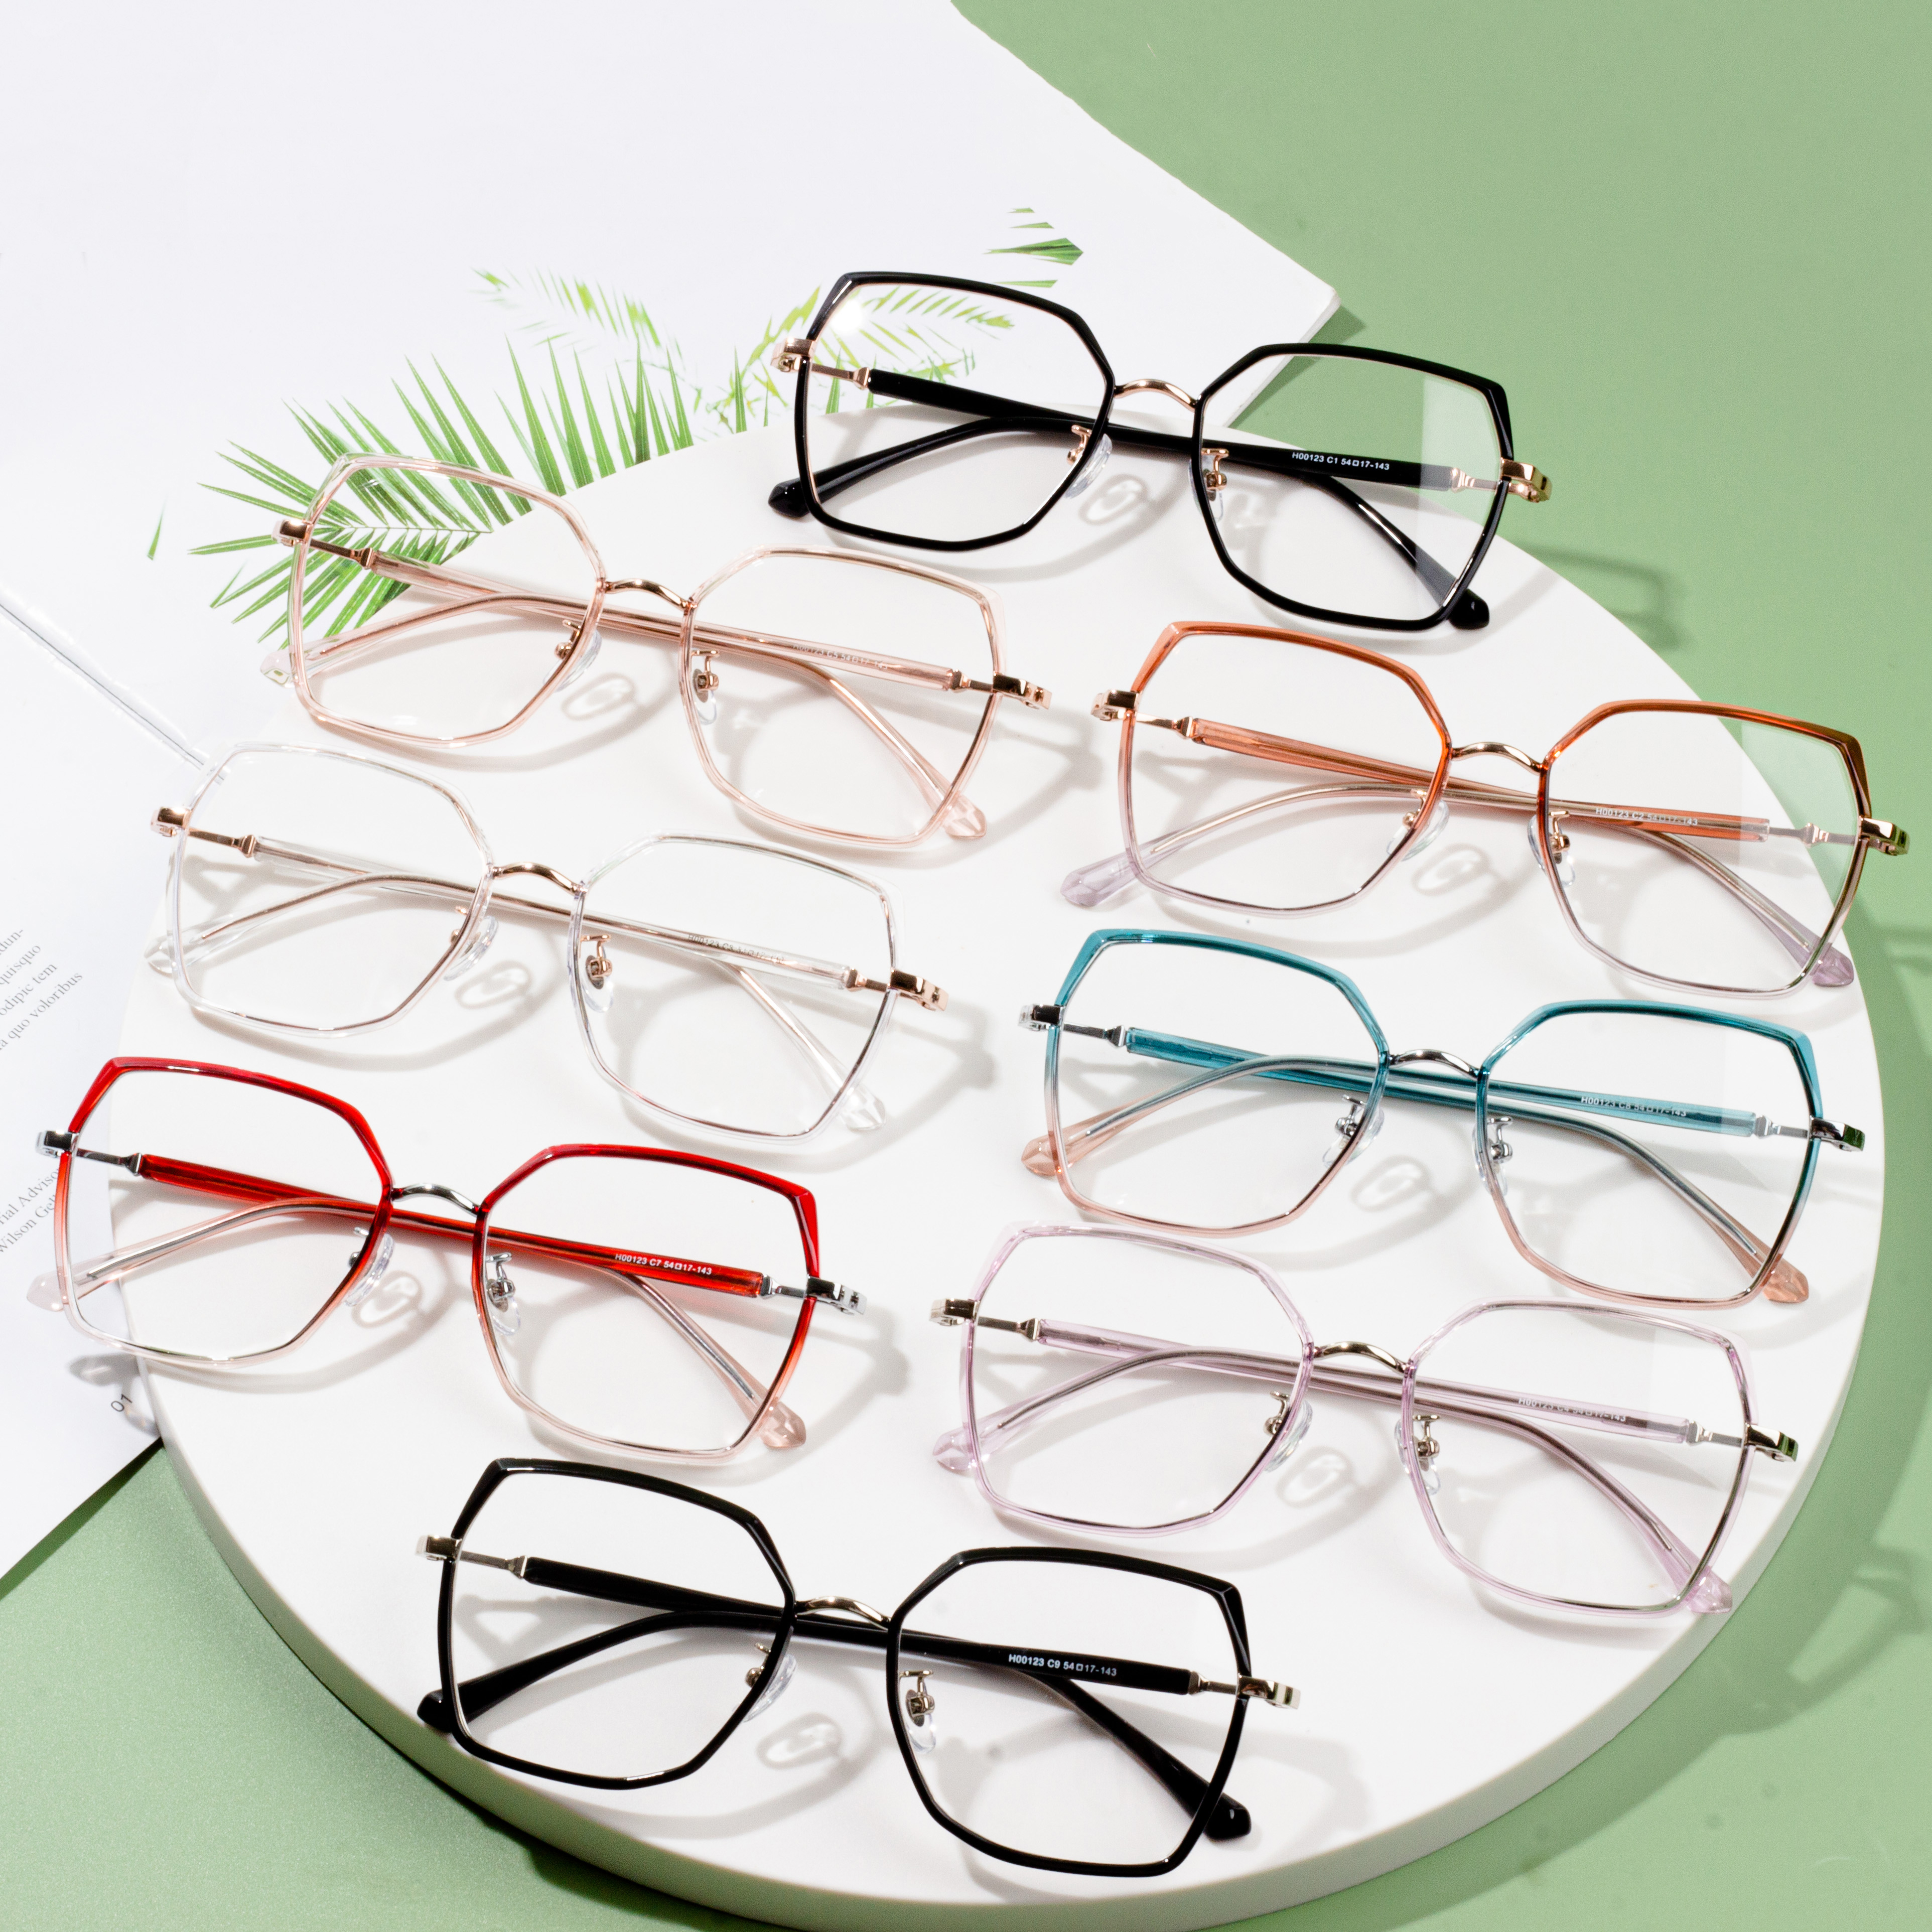 Professional Design Metal Frame Glasses - wholesale optical frames outlet – HJ EYEWEAR